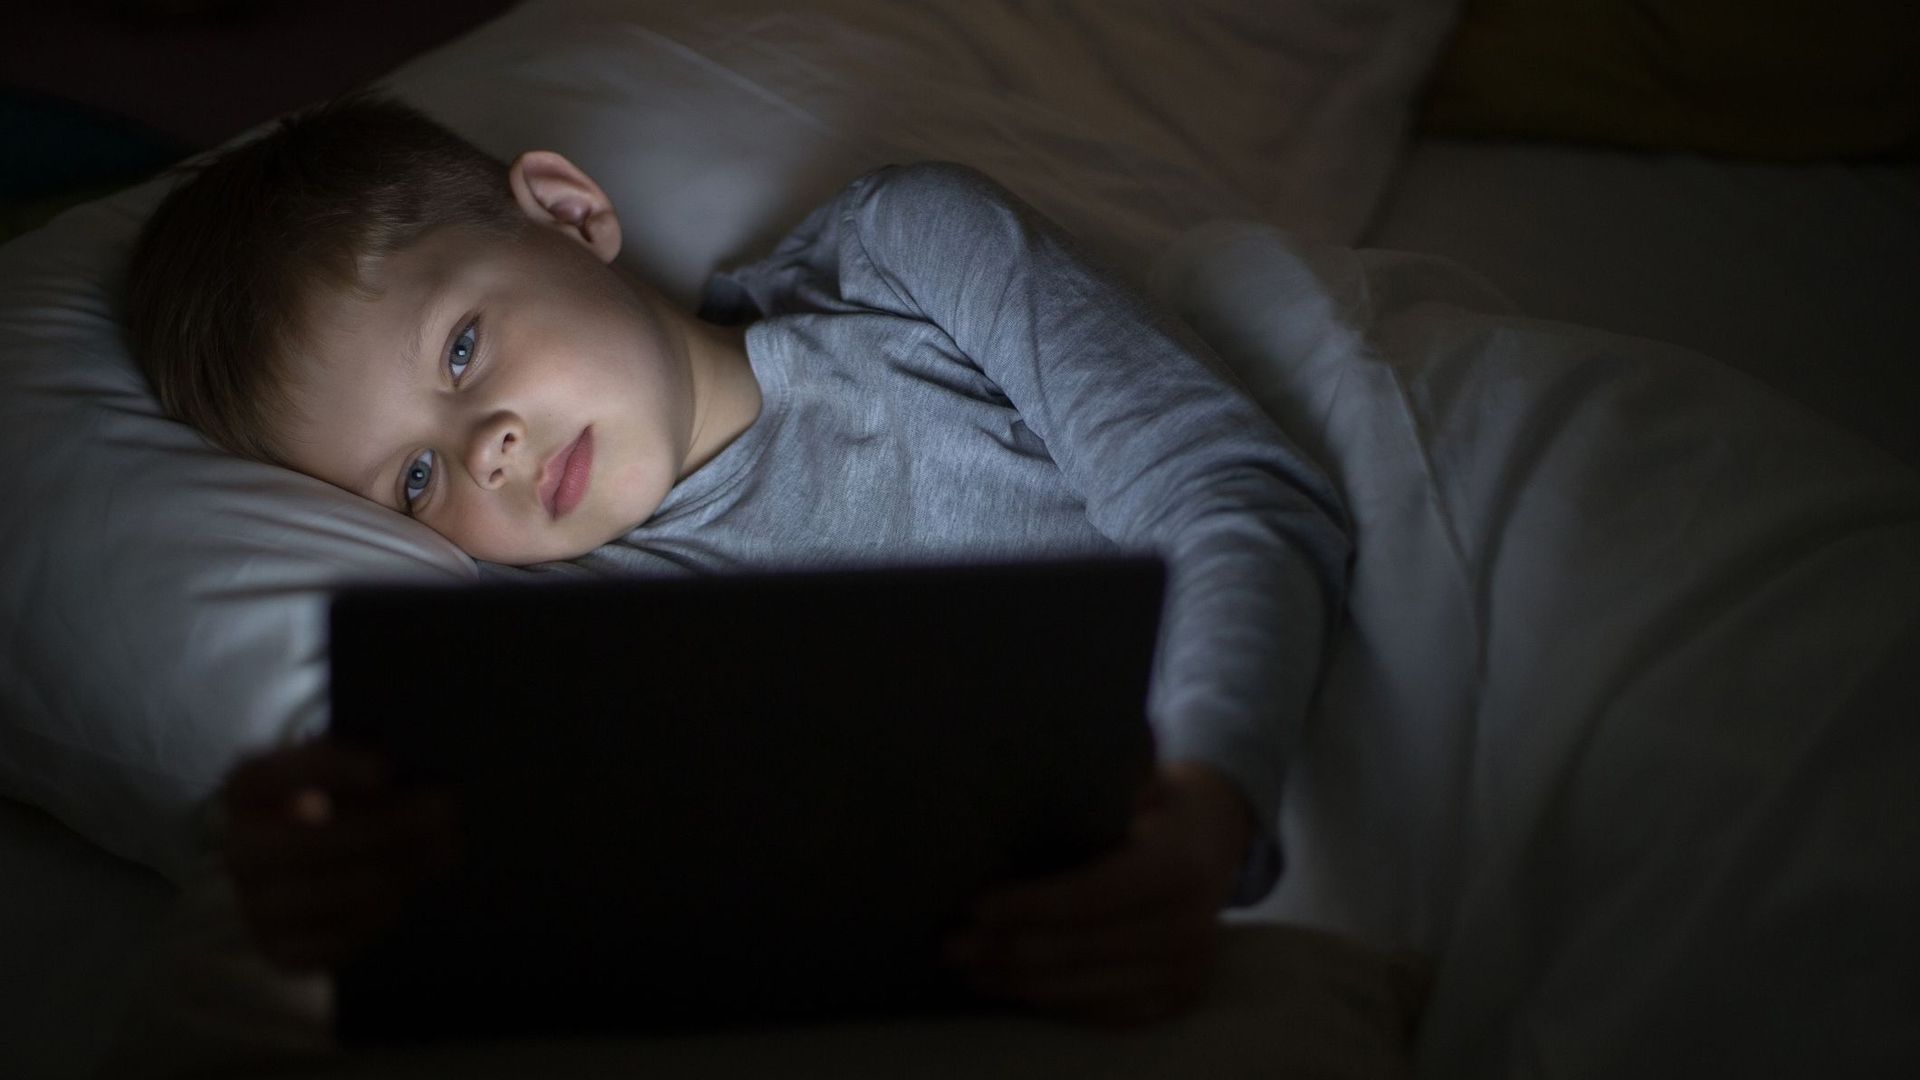 Plus de deux heures d'écran par jour nuit aux capacités intellectuelles des enfants 